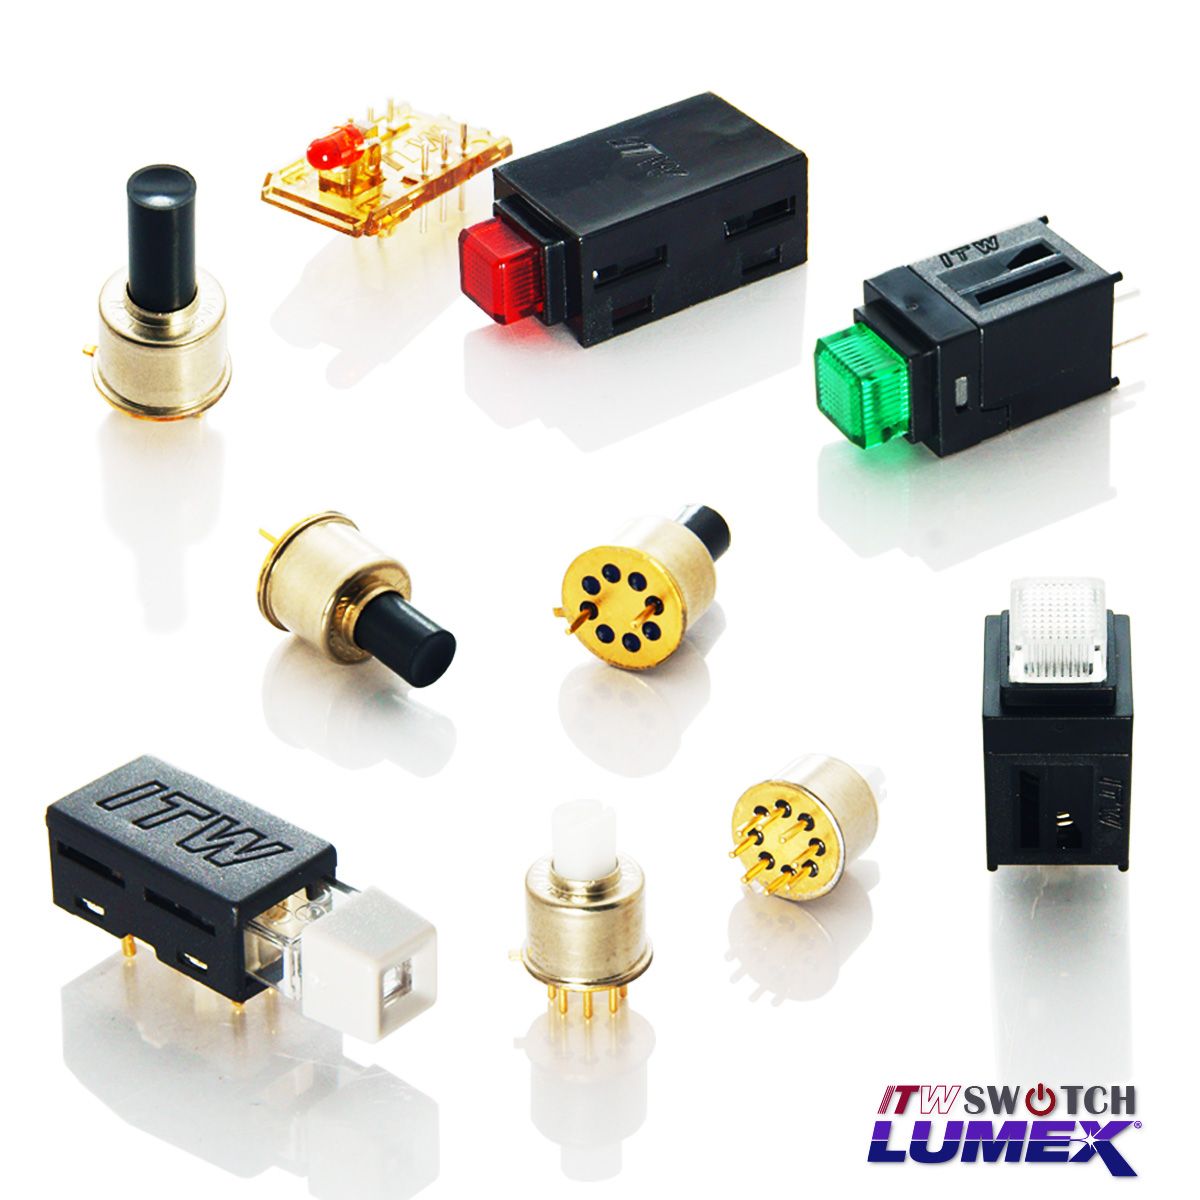 ITW Lumex Switchbietet Miniatur-LED-beleuchtete Drucktastenschalter für PCBA-Anwendungen.